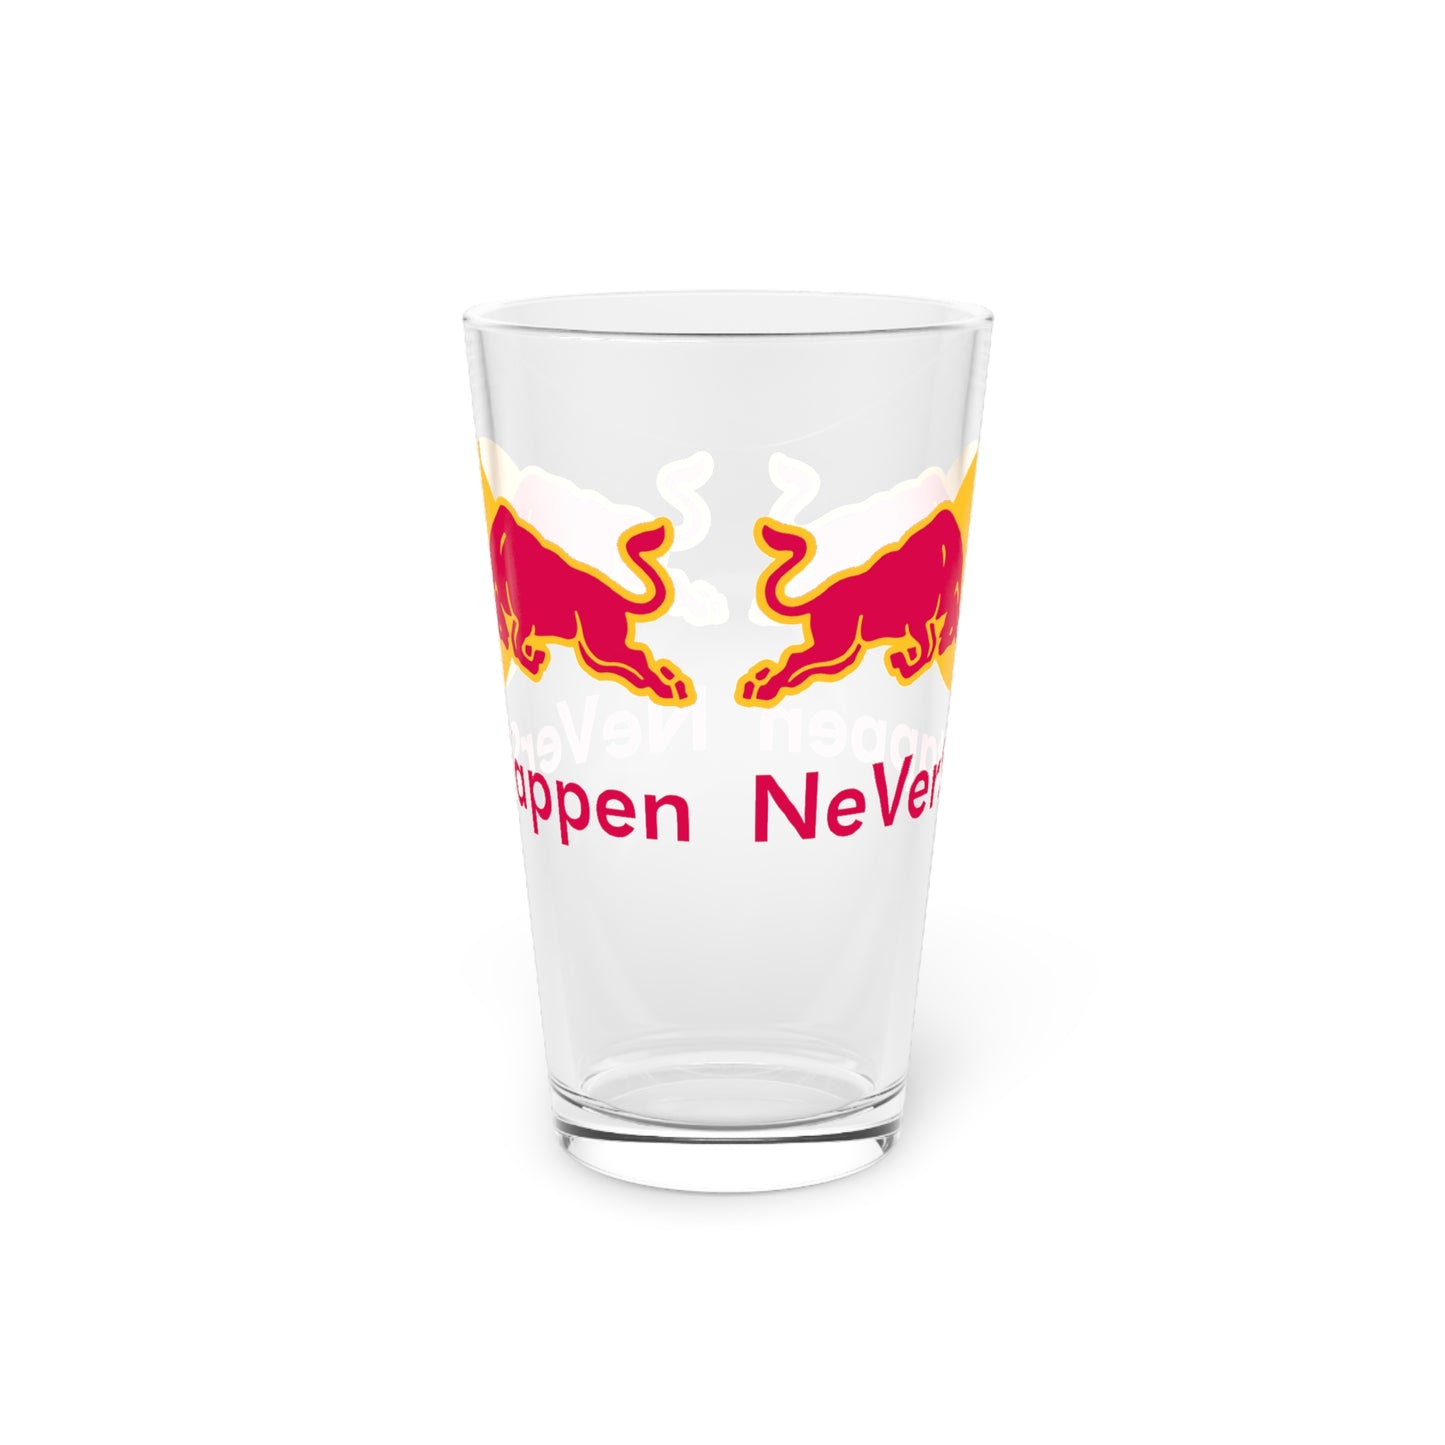 NeVerStappen Red Bull Formula 1 F1 Max Verstappen Pint Glass, 16oz Next Cult Brand